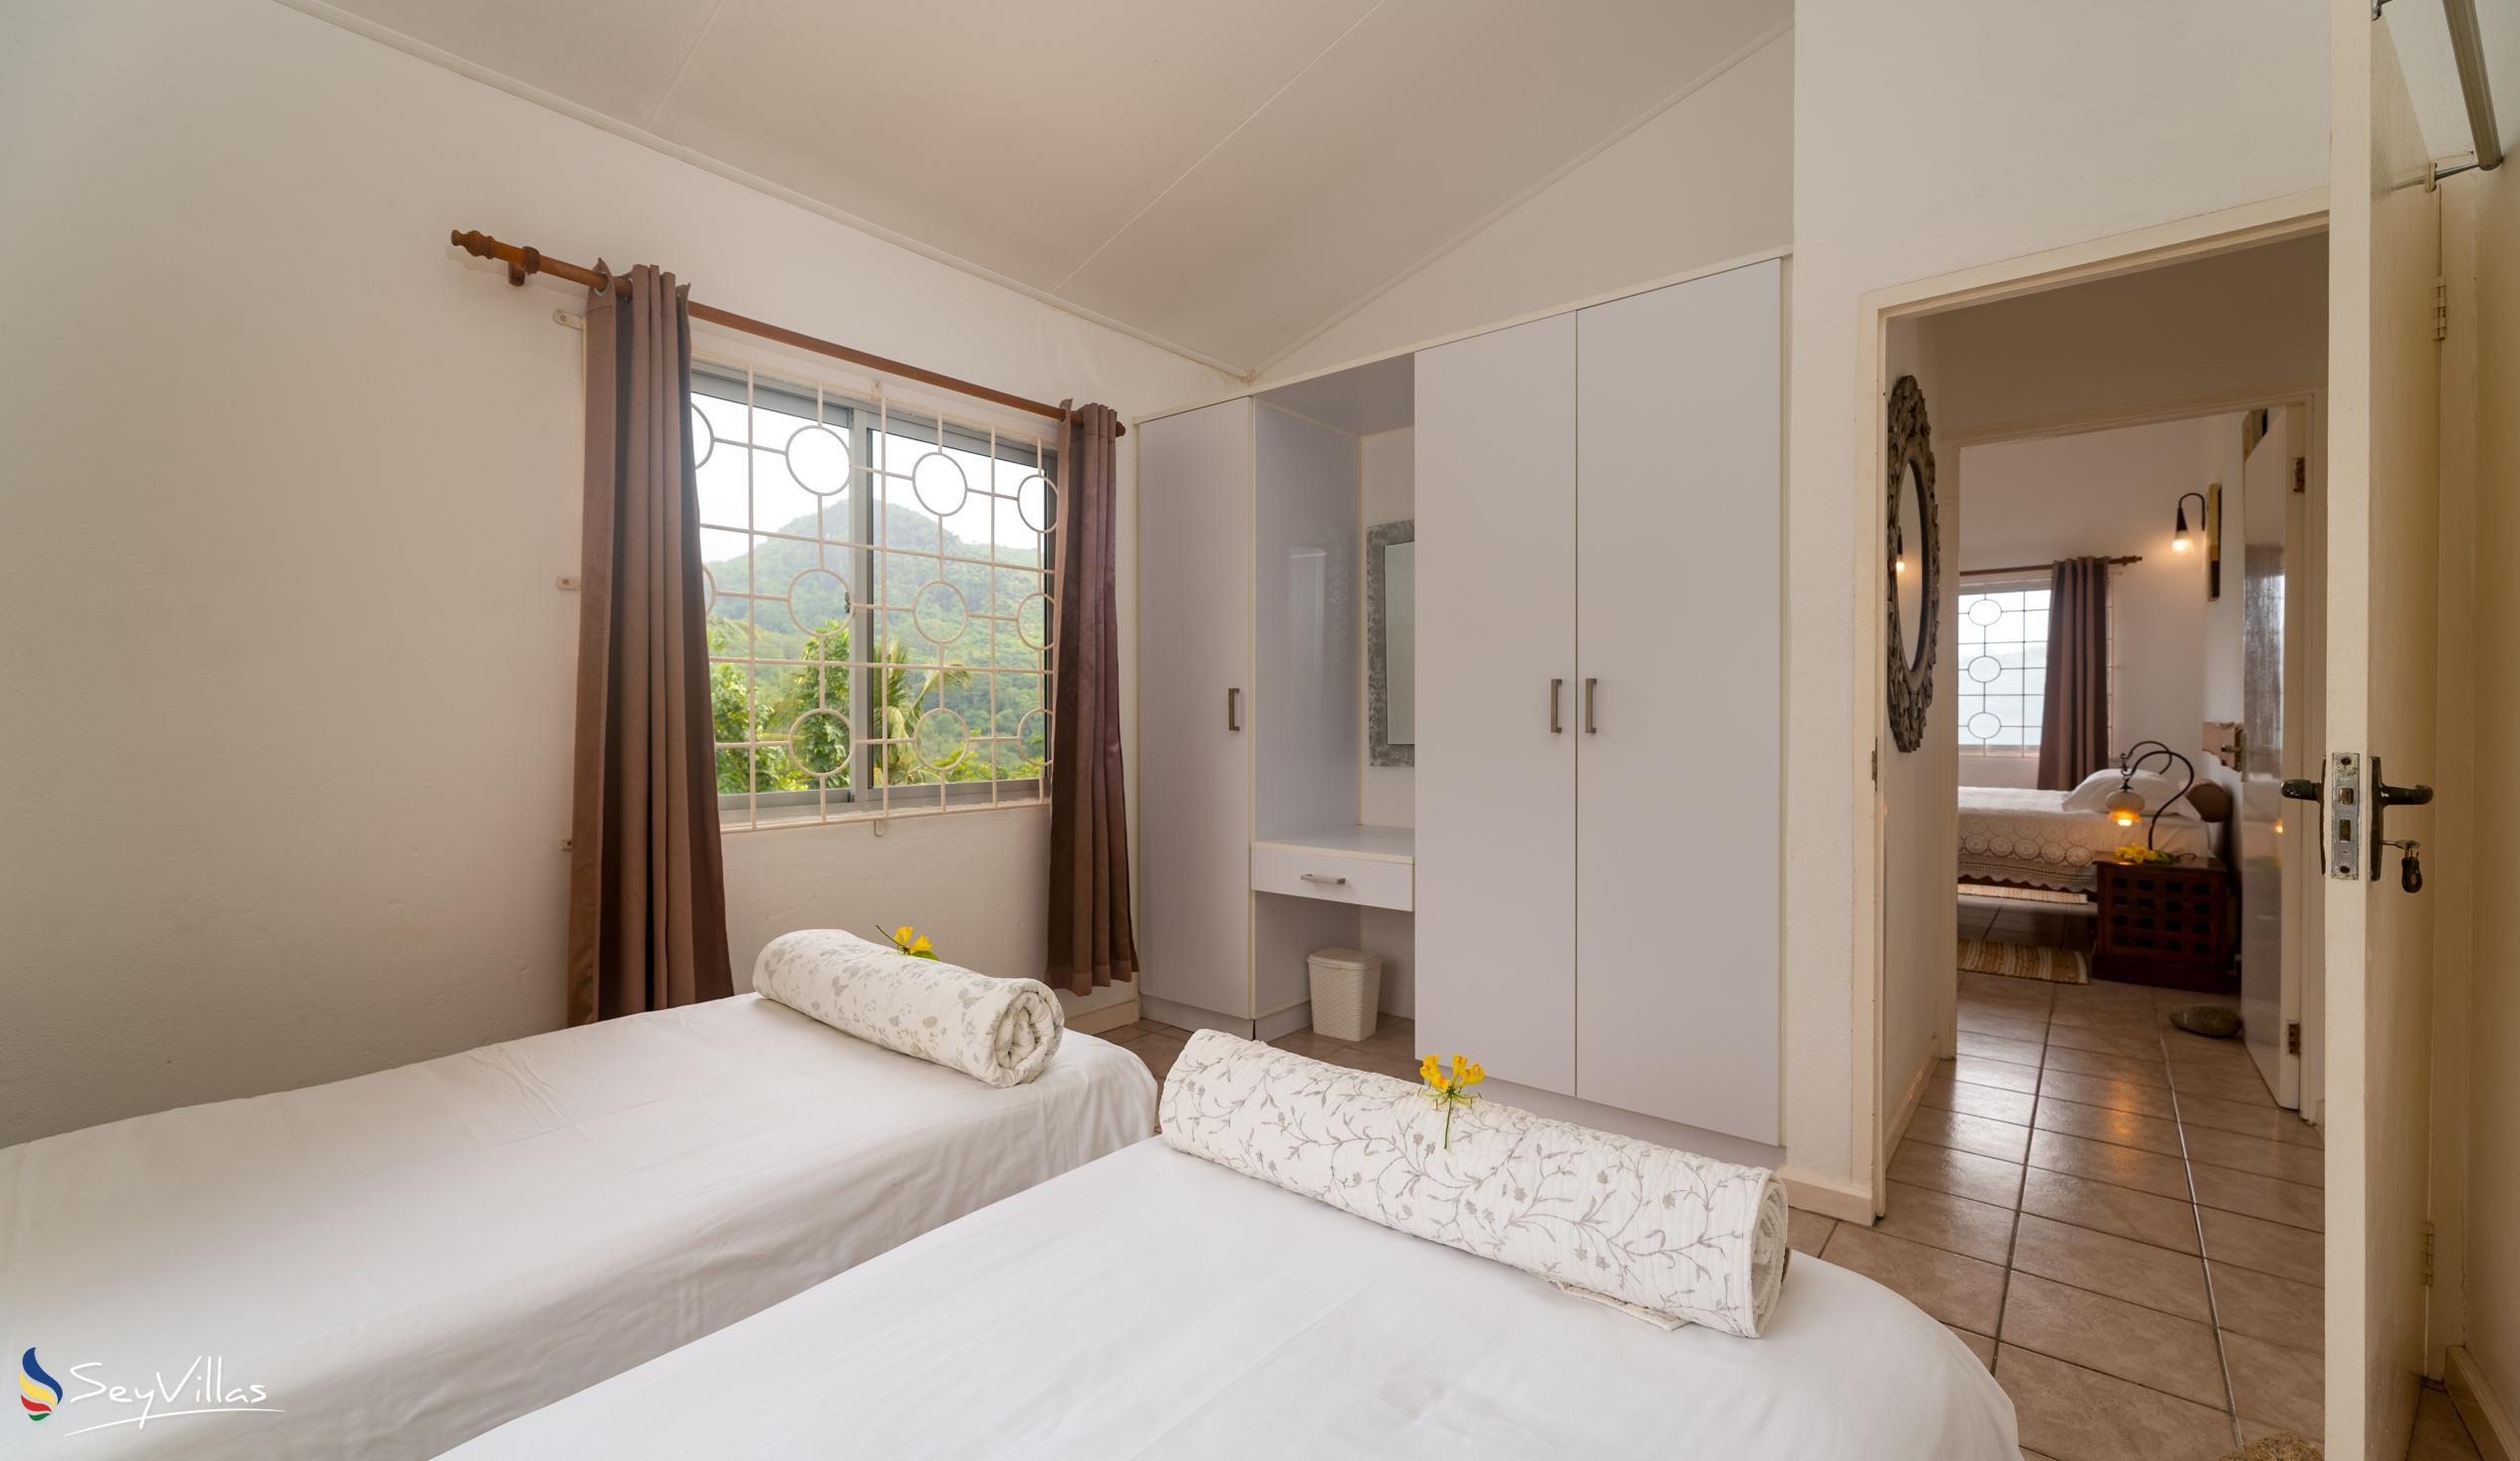 Foto 71: Residence Monte Cristo - Appartamento con 2 camere - Mahé (Seychelles)